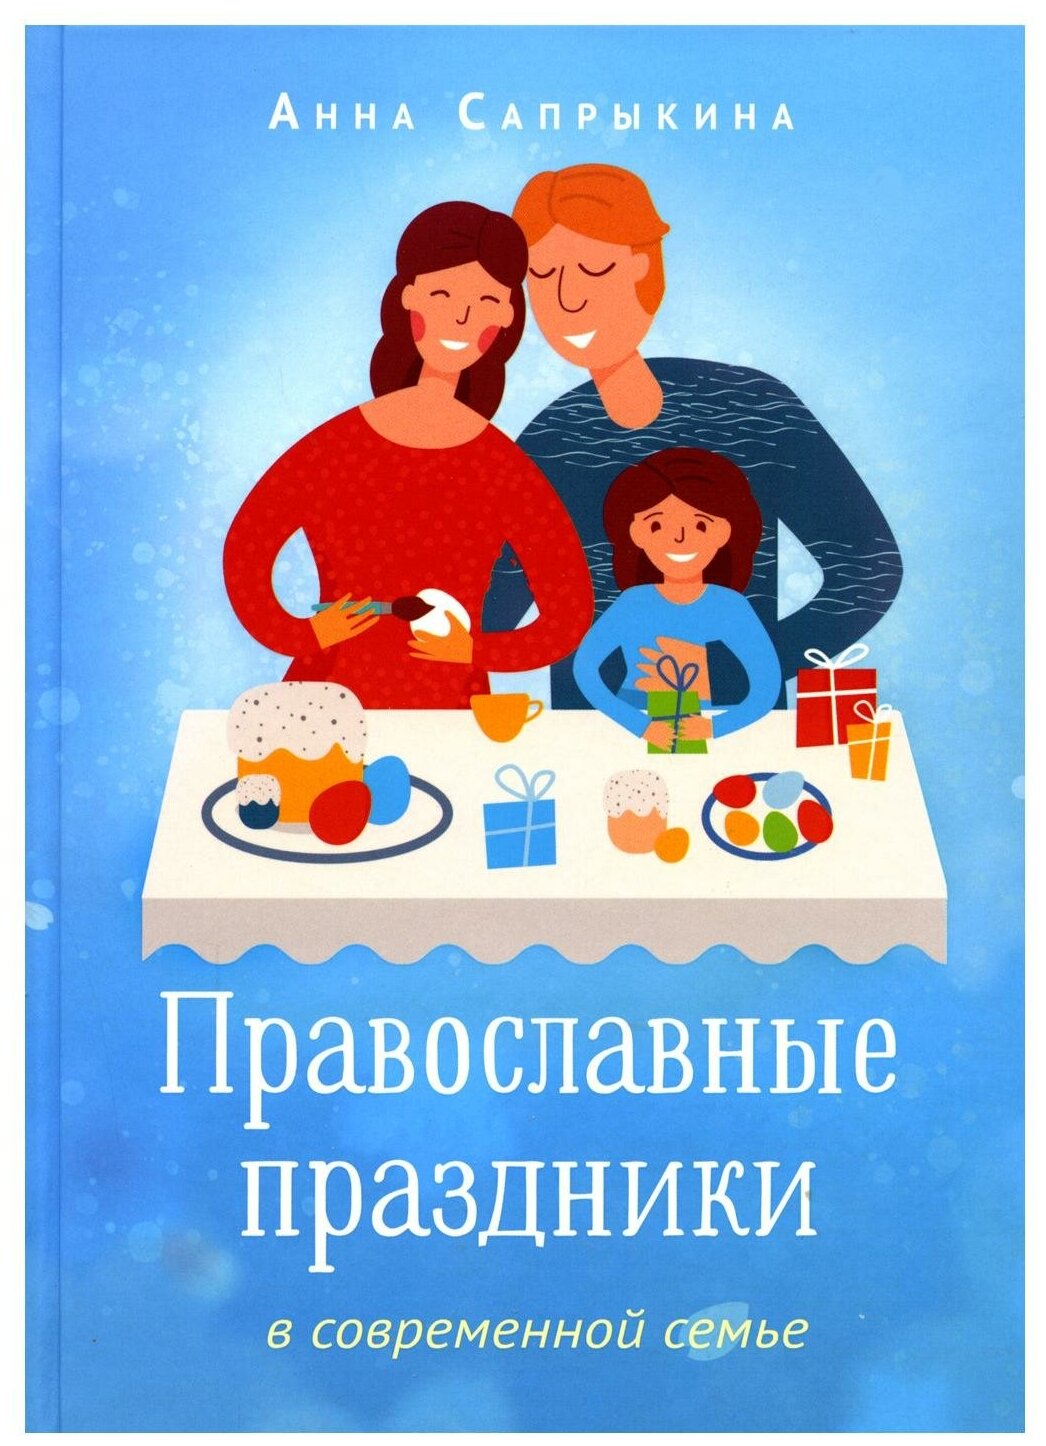 Православные праздники в современной семье: заметки с элементами методического пособия по основам семейной православной культуры